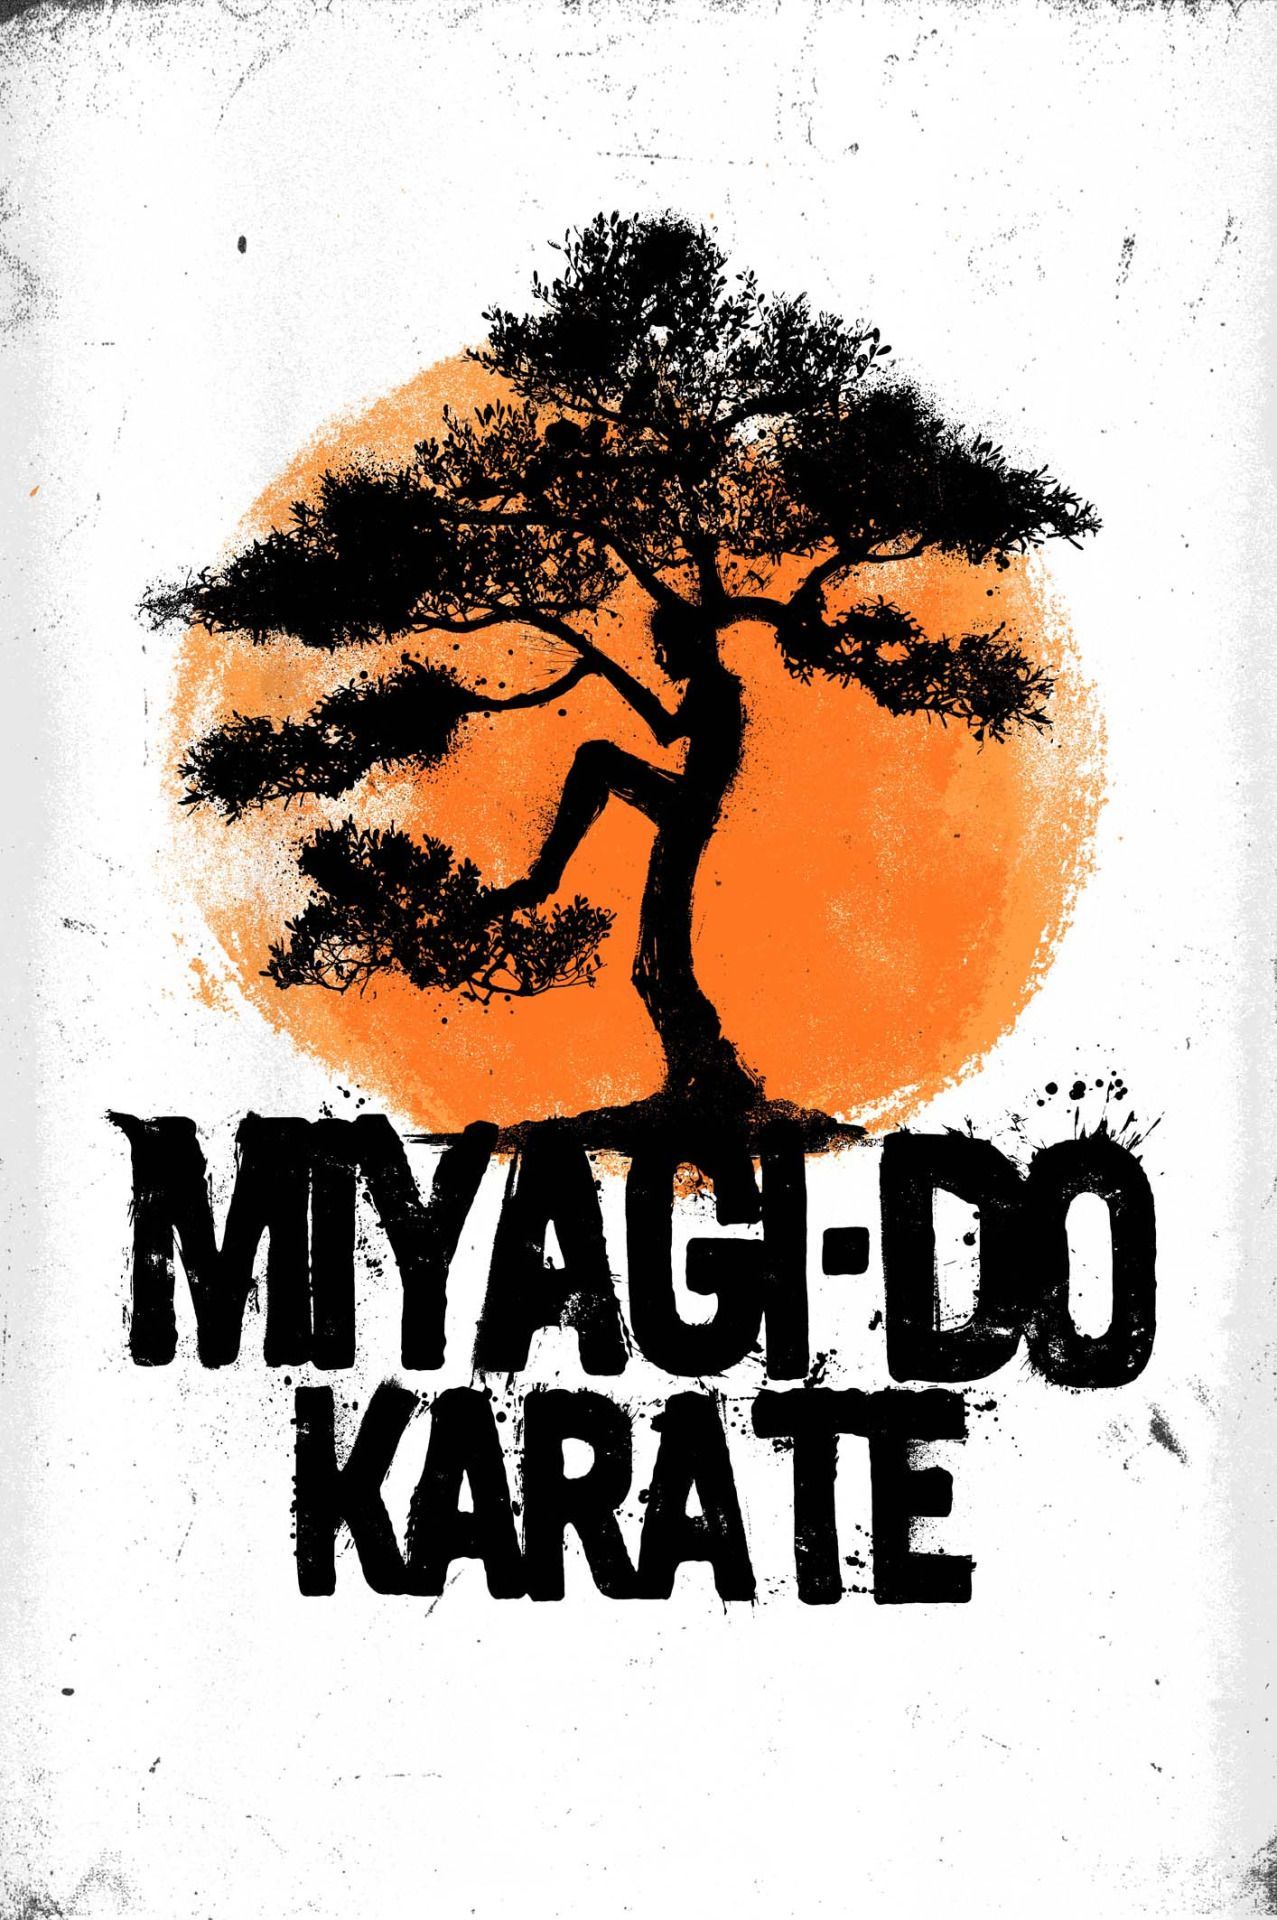 danielnorris. Karate kid, Karate kid movie, Karate kid quotes